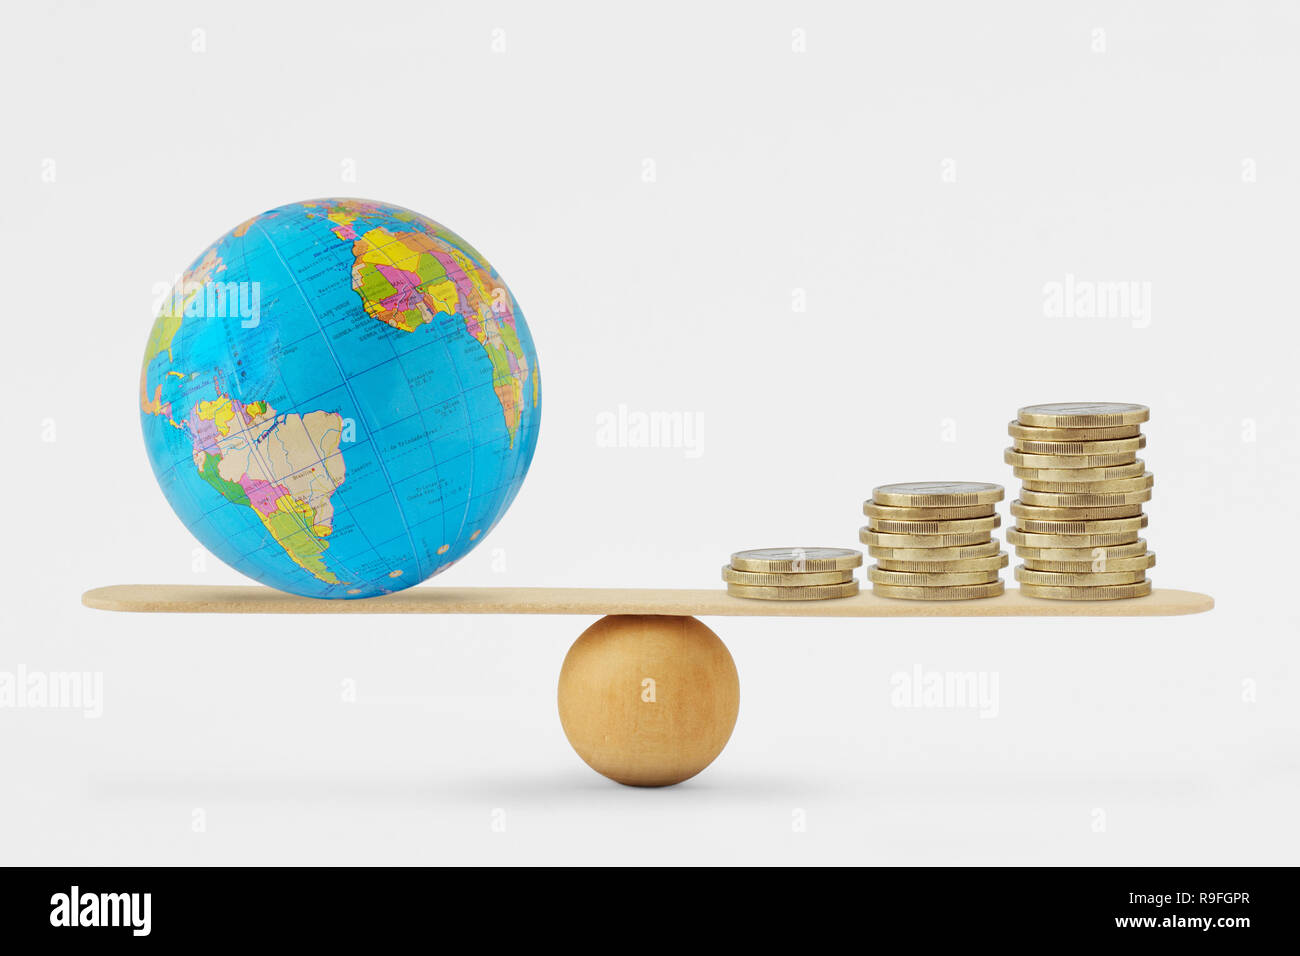 Globe terrestre et de l'échelle d'équilibre de la pile de pièces - Notion d'équilibre entre la santé et la croissance économique planétaire Banque D'Images